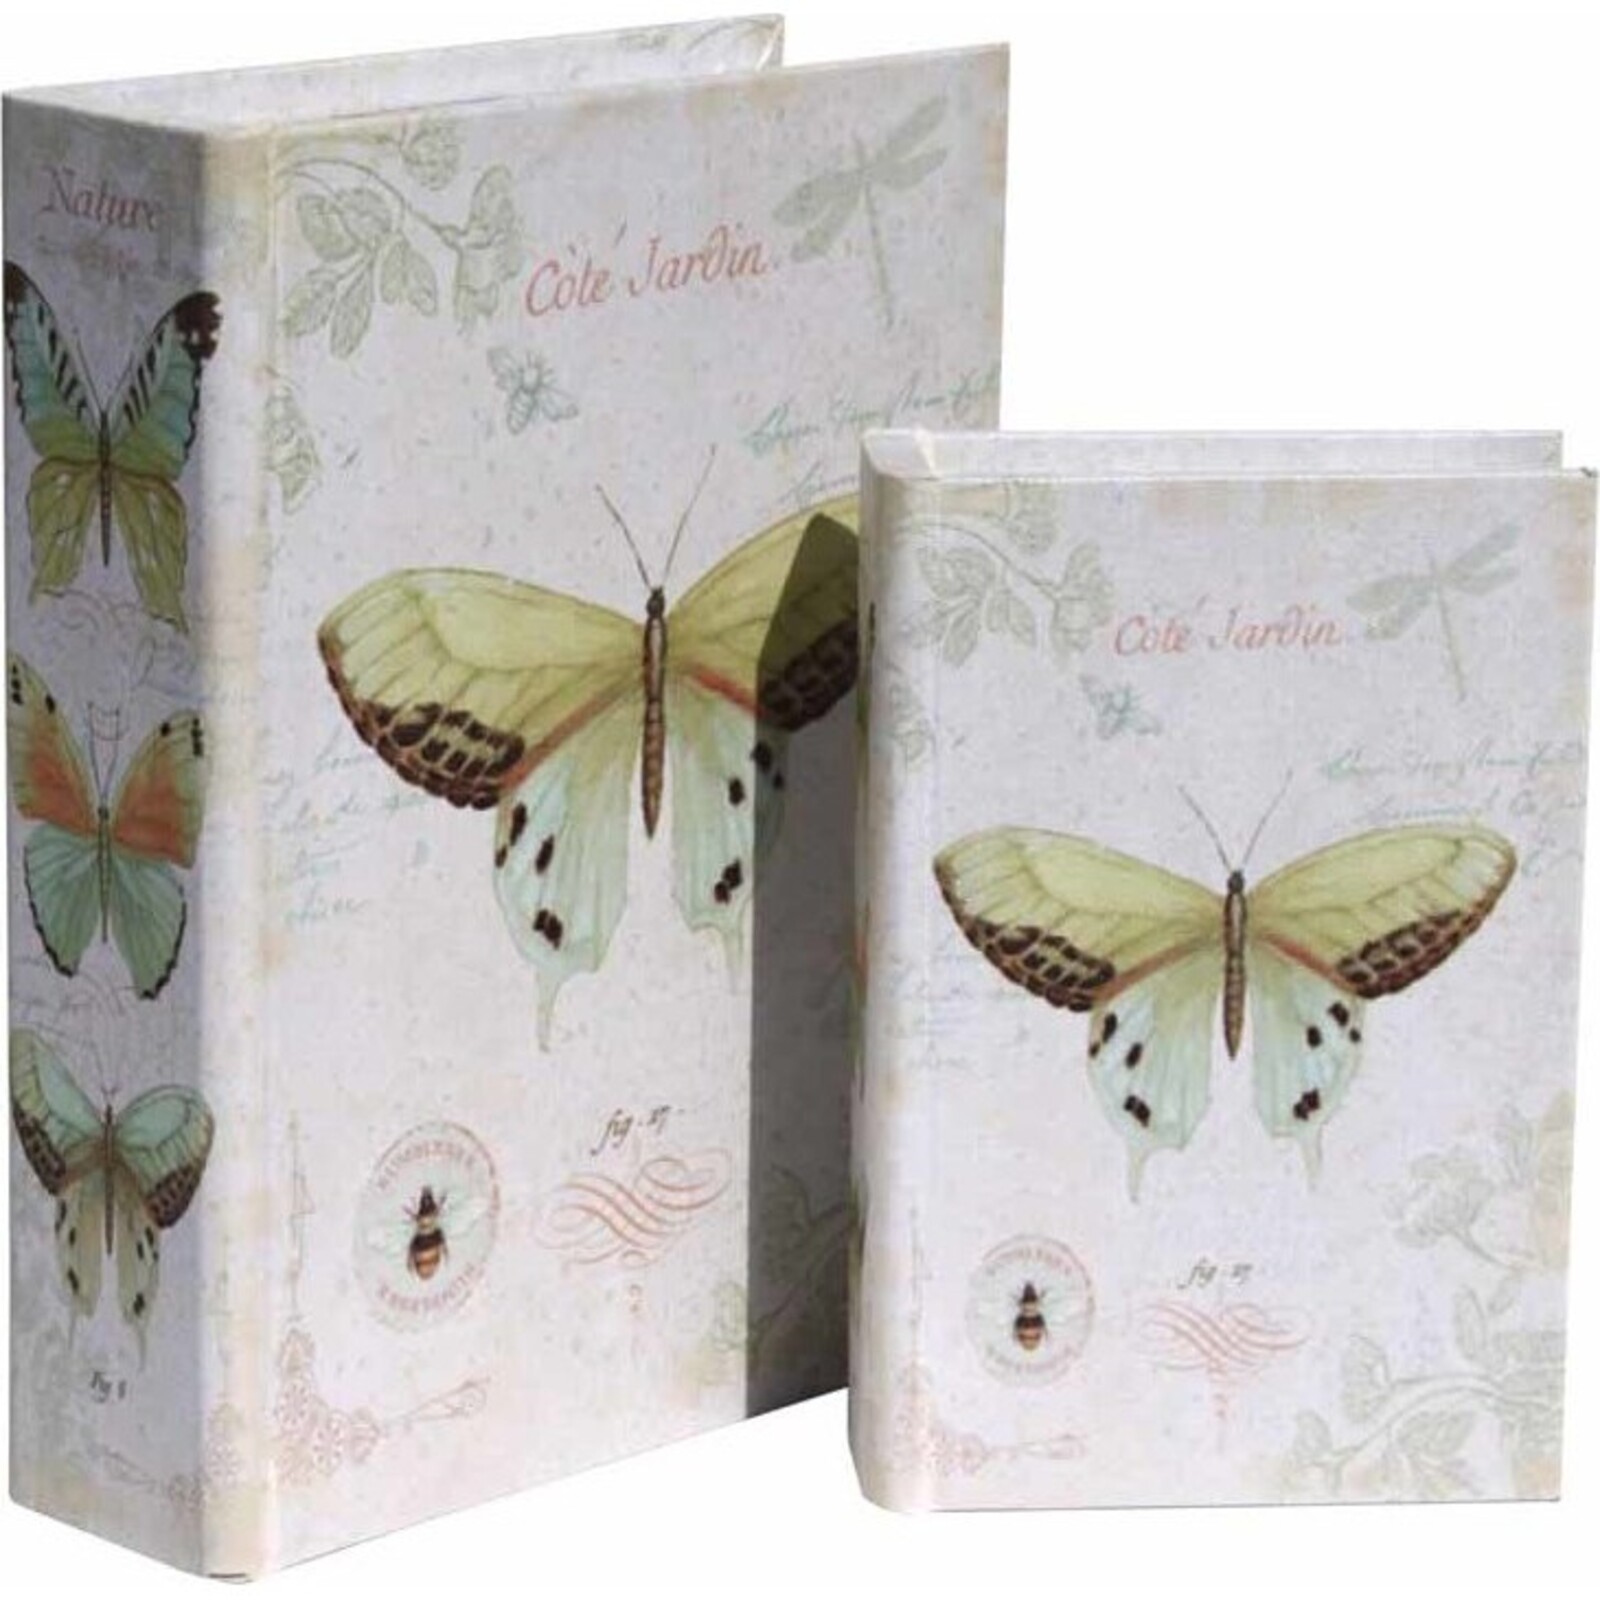 Book Box - Cote Jardin - set 2